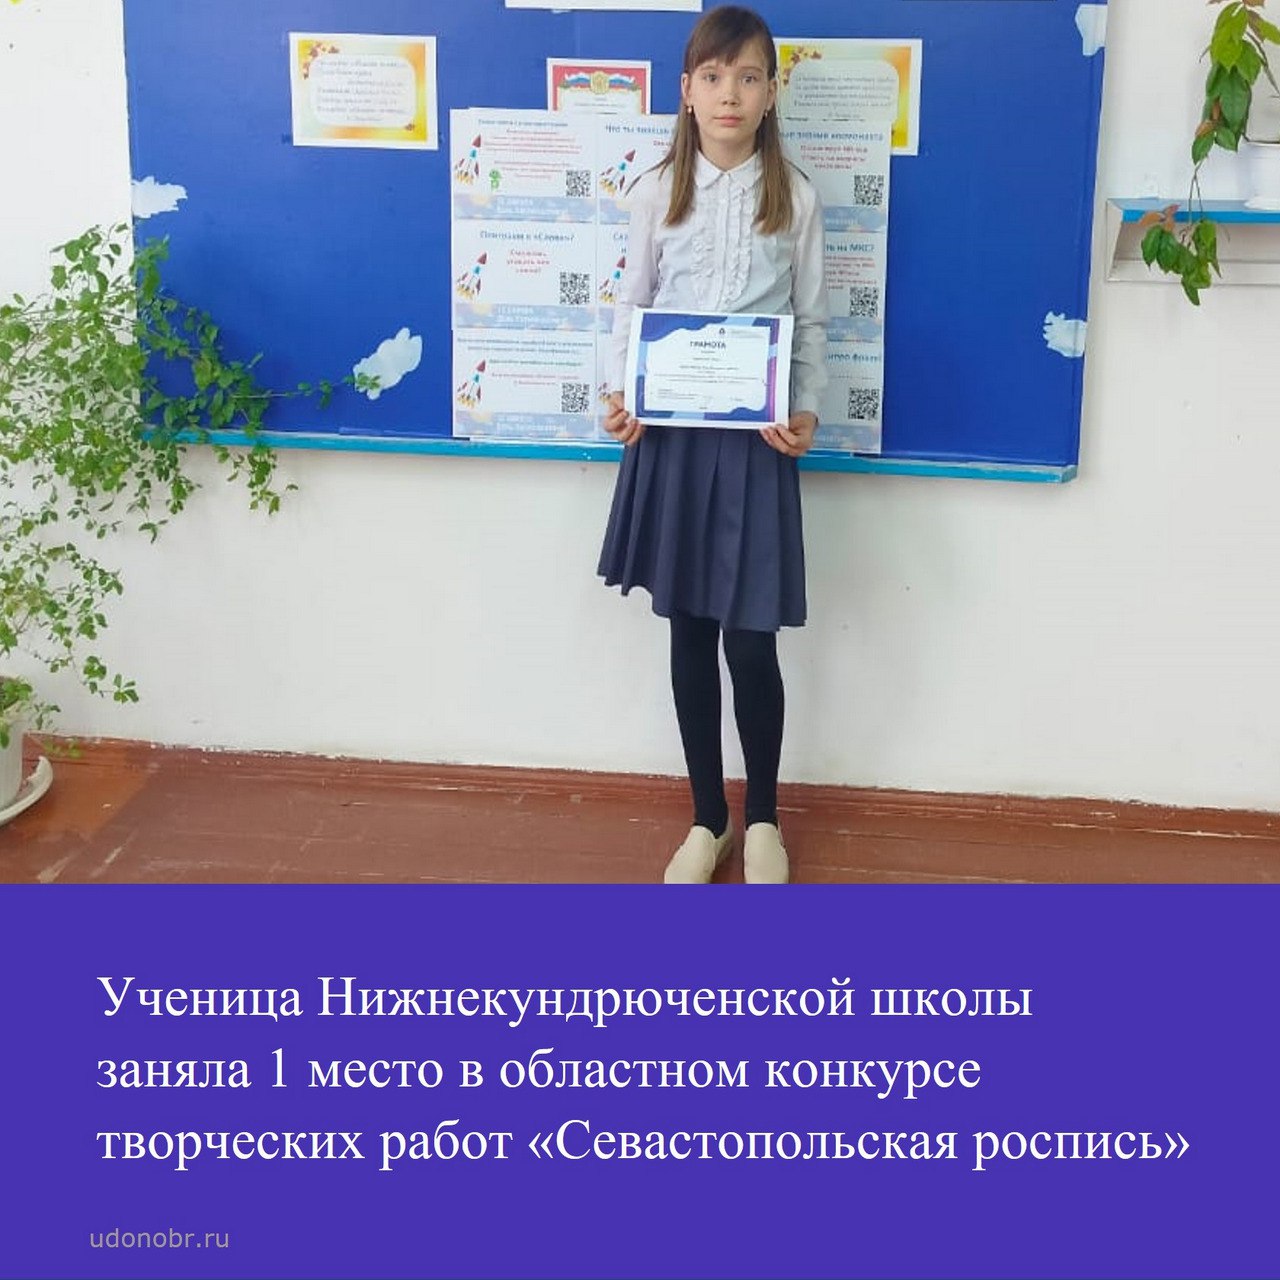 Ученица Нижнекундрюченской школы заняла 1 место в областном конкурсе творческих работ «Севастопольская роспись»